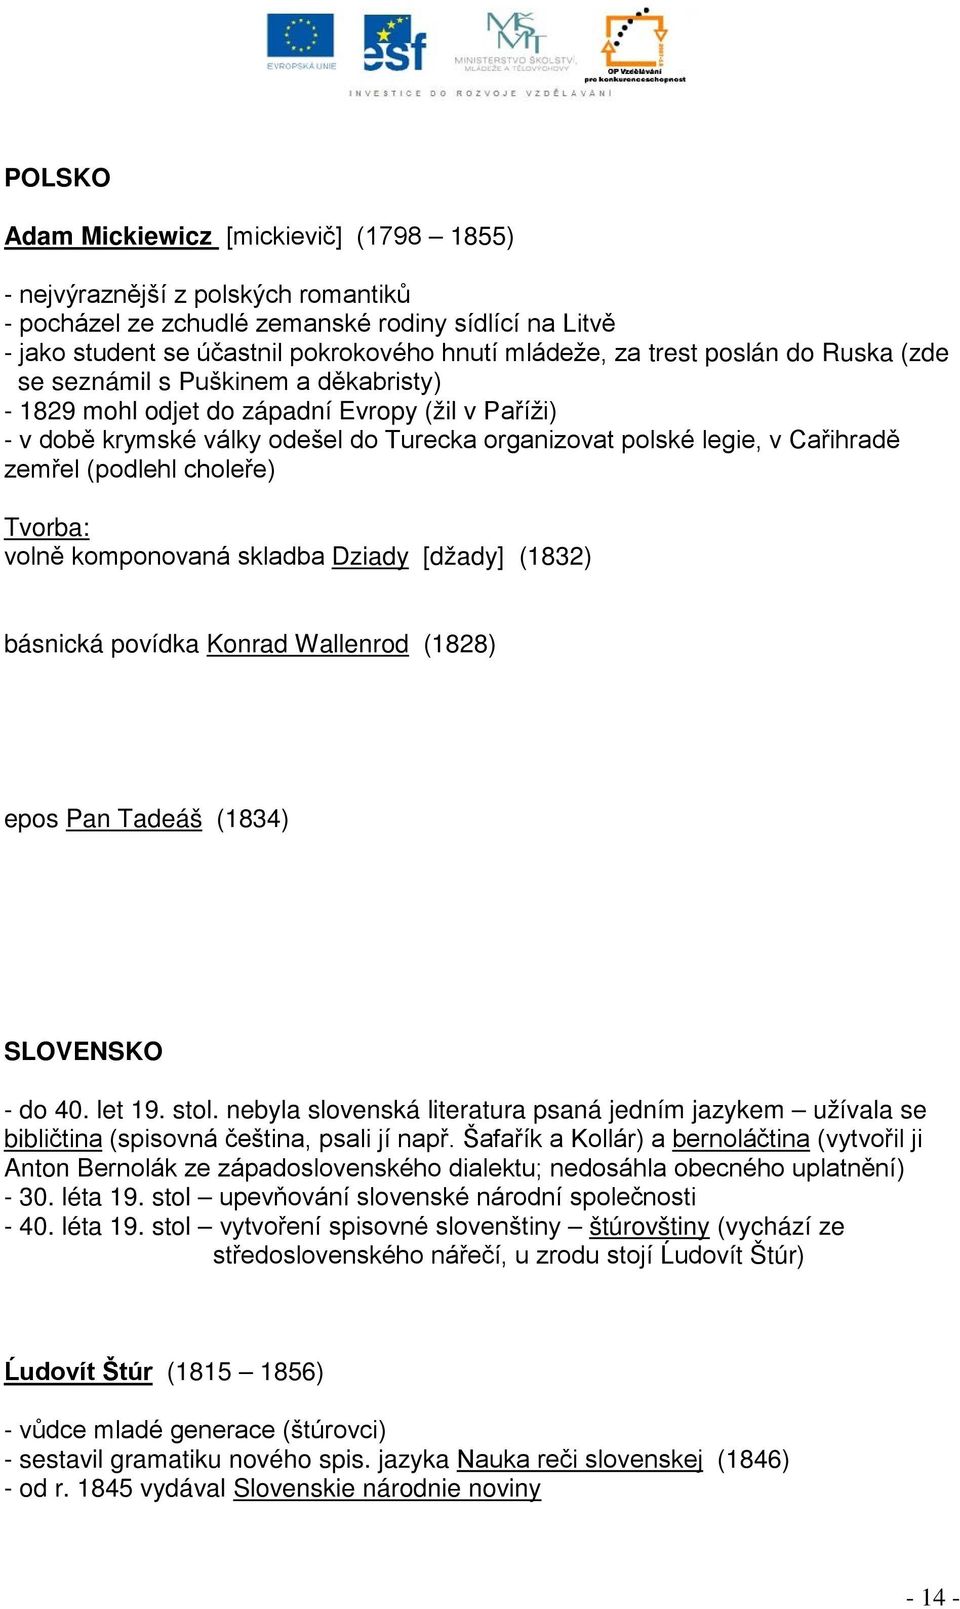 zemřel (podlehl choleře) Tvorba: volně komponovaná skladba Dziady [džady] (1832) básnická povídka Konrad Wallenrod (1828) epos Pan Tadeáš (1834) SLOVENSKO - do 40. let 19. stol.